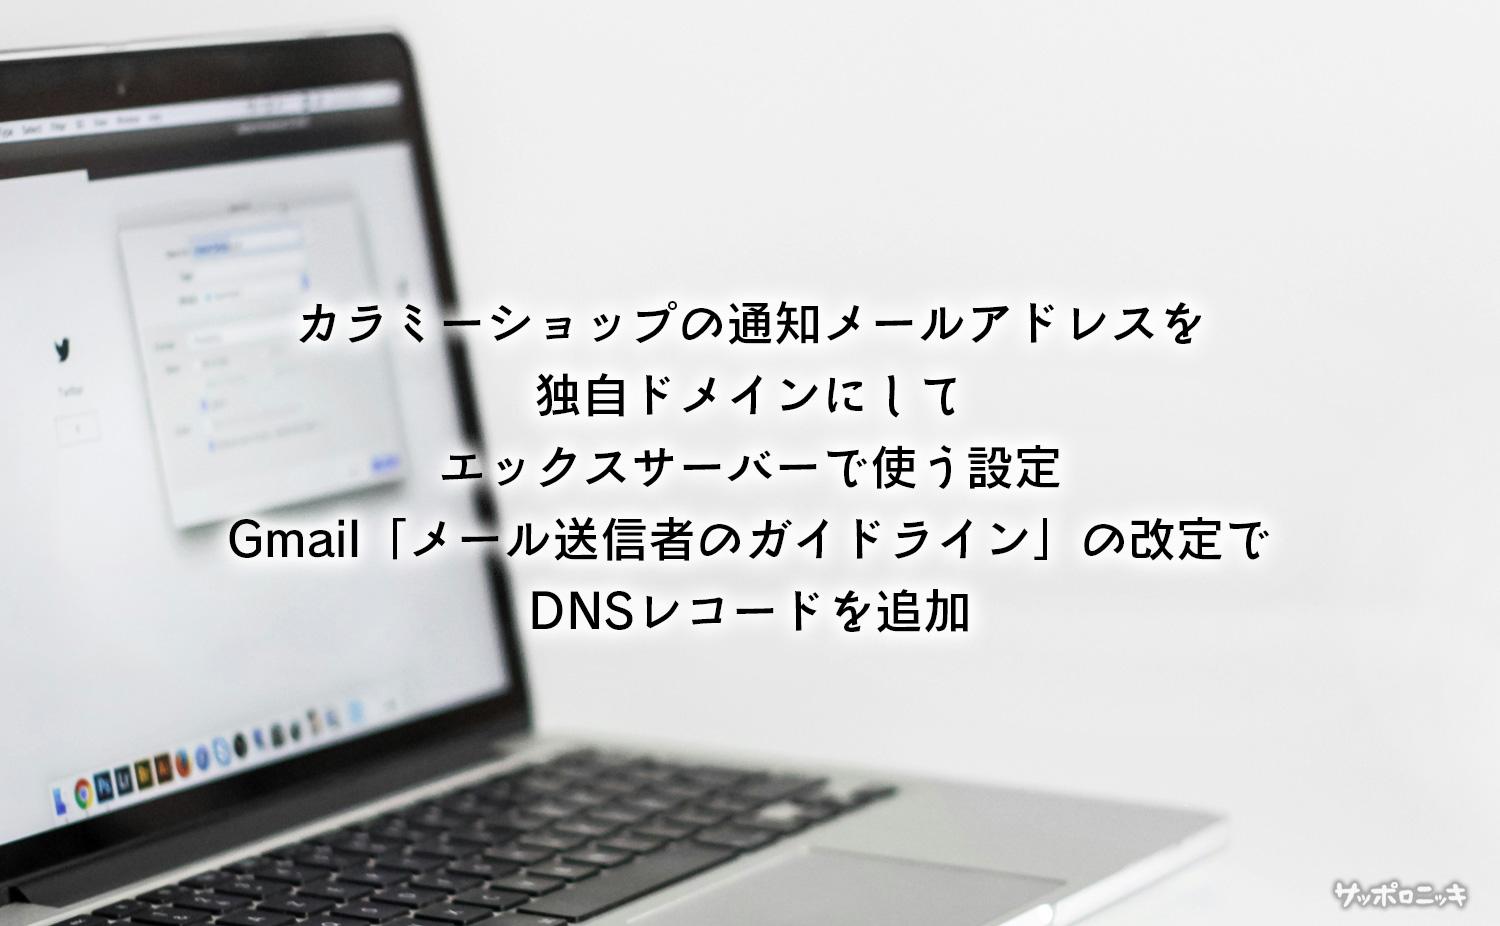 カラミーショップの通知メールアドレスを独自ドメインにしてエックスサーバーで使う設定、Gmail「メール送信者のガイドライン」の改定でDNSレコードを追加